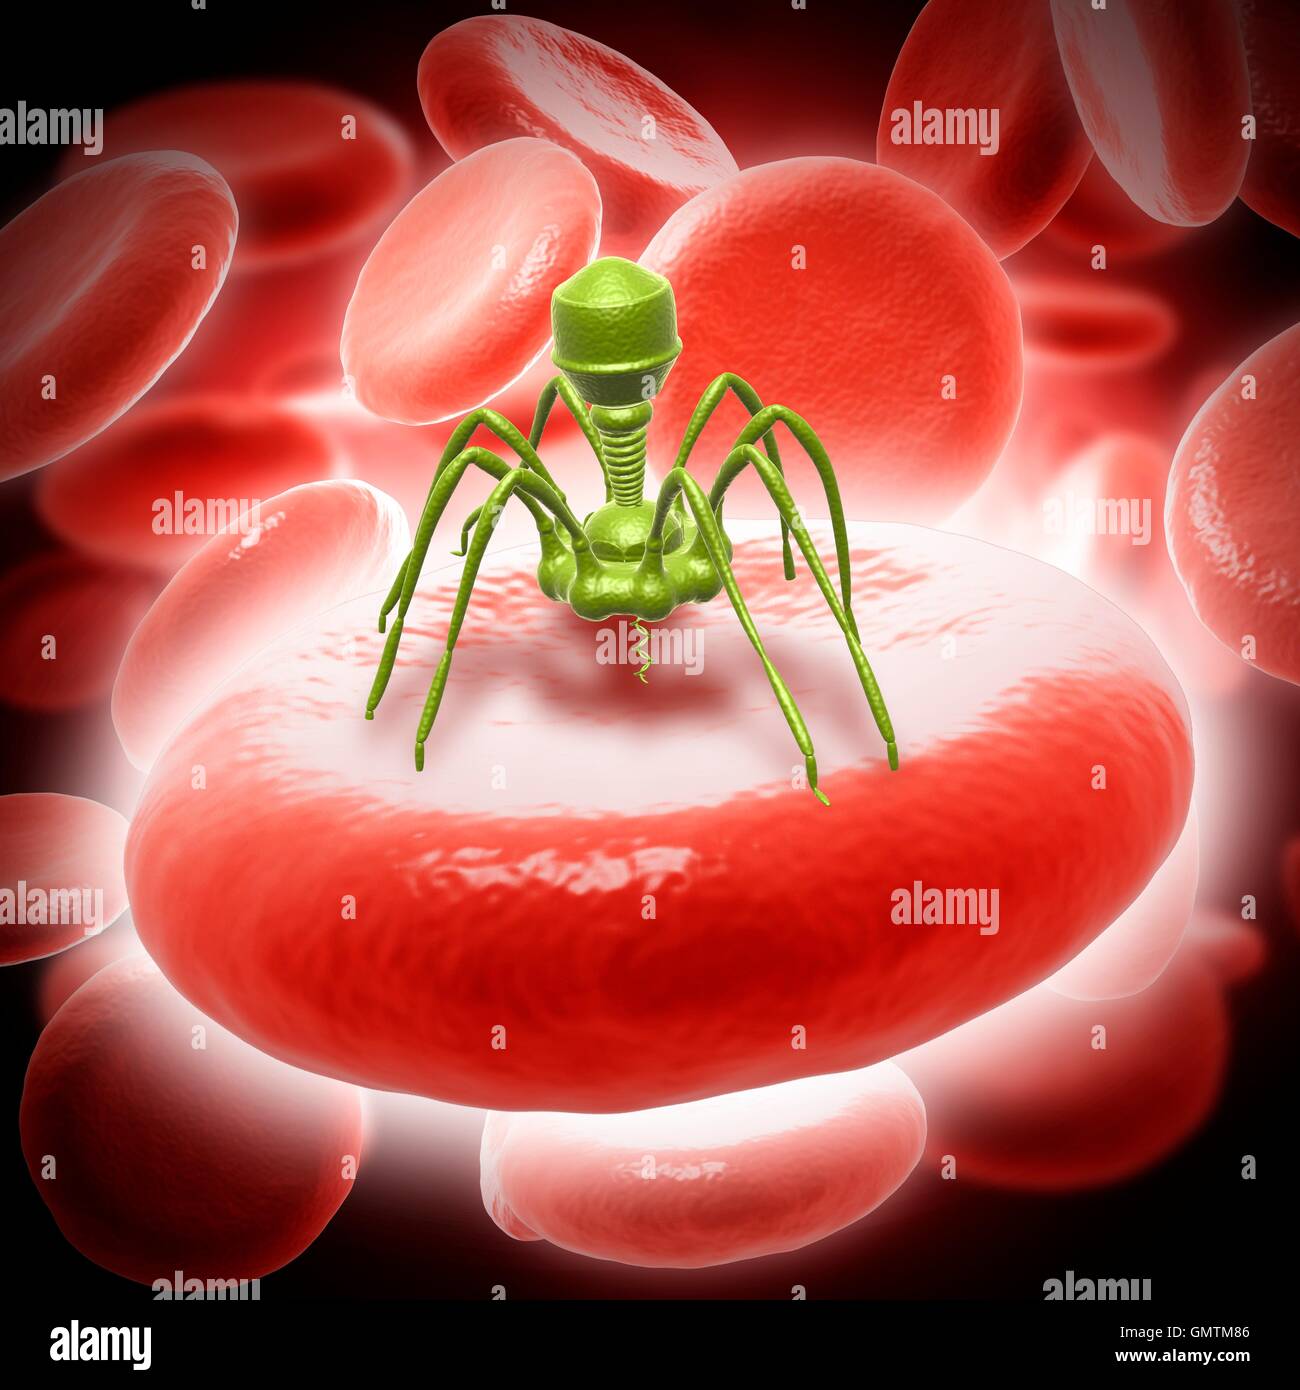 Bacteriophage t4 virus, illustration. Stock Photo